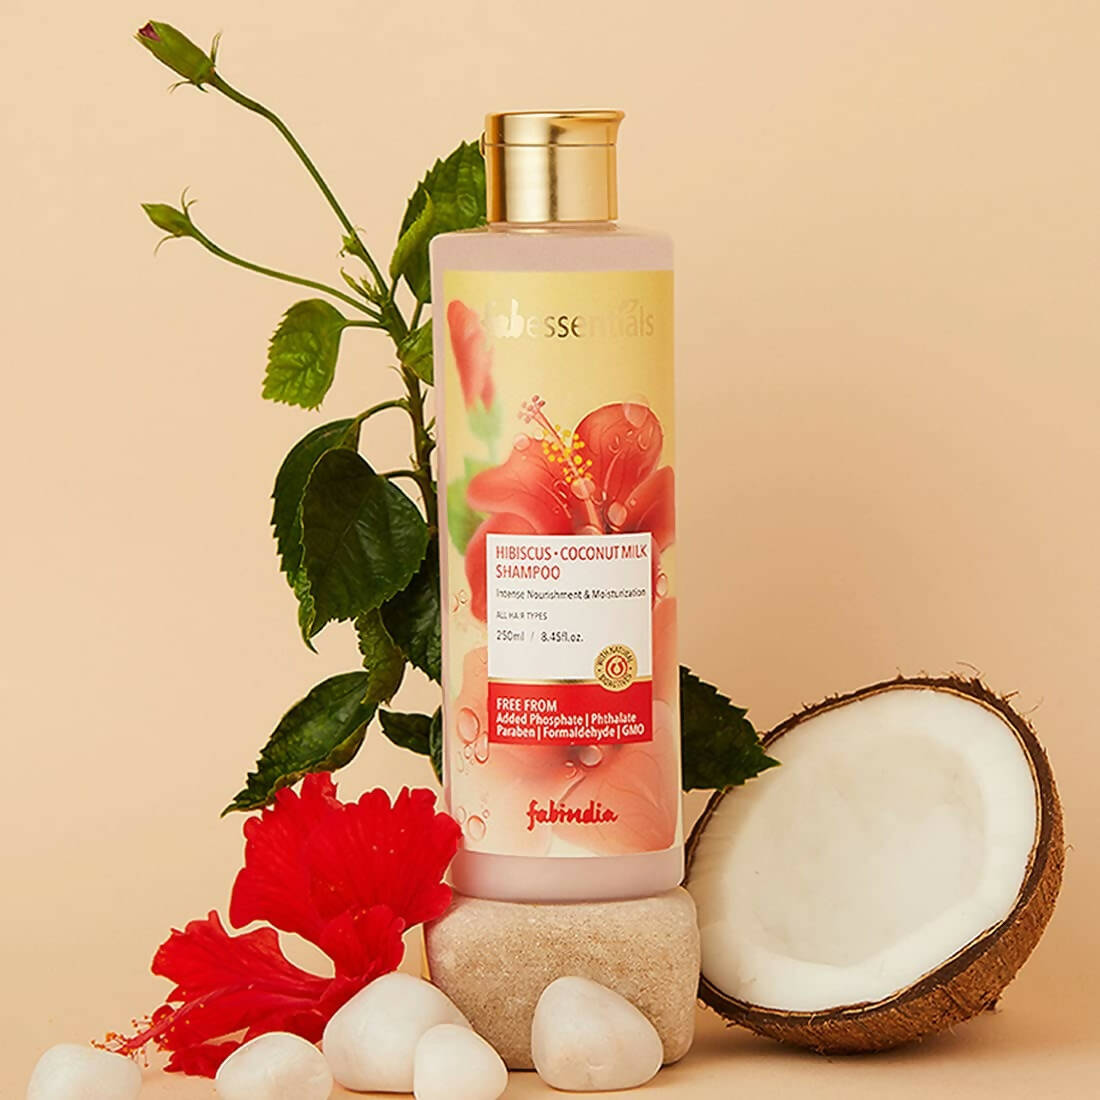 Fabessentials Hibiscus Coconut Milk Shampoo